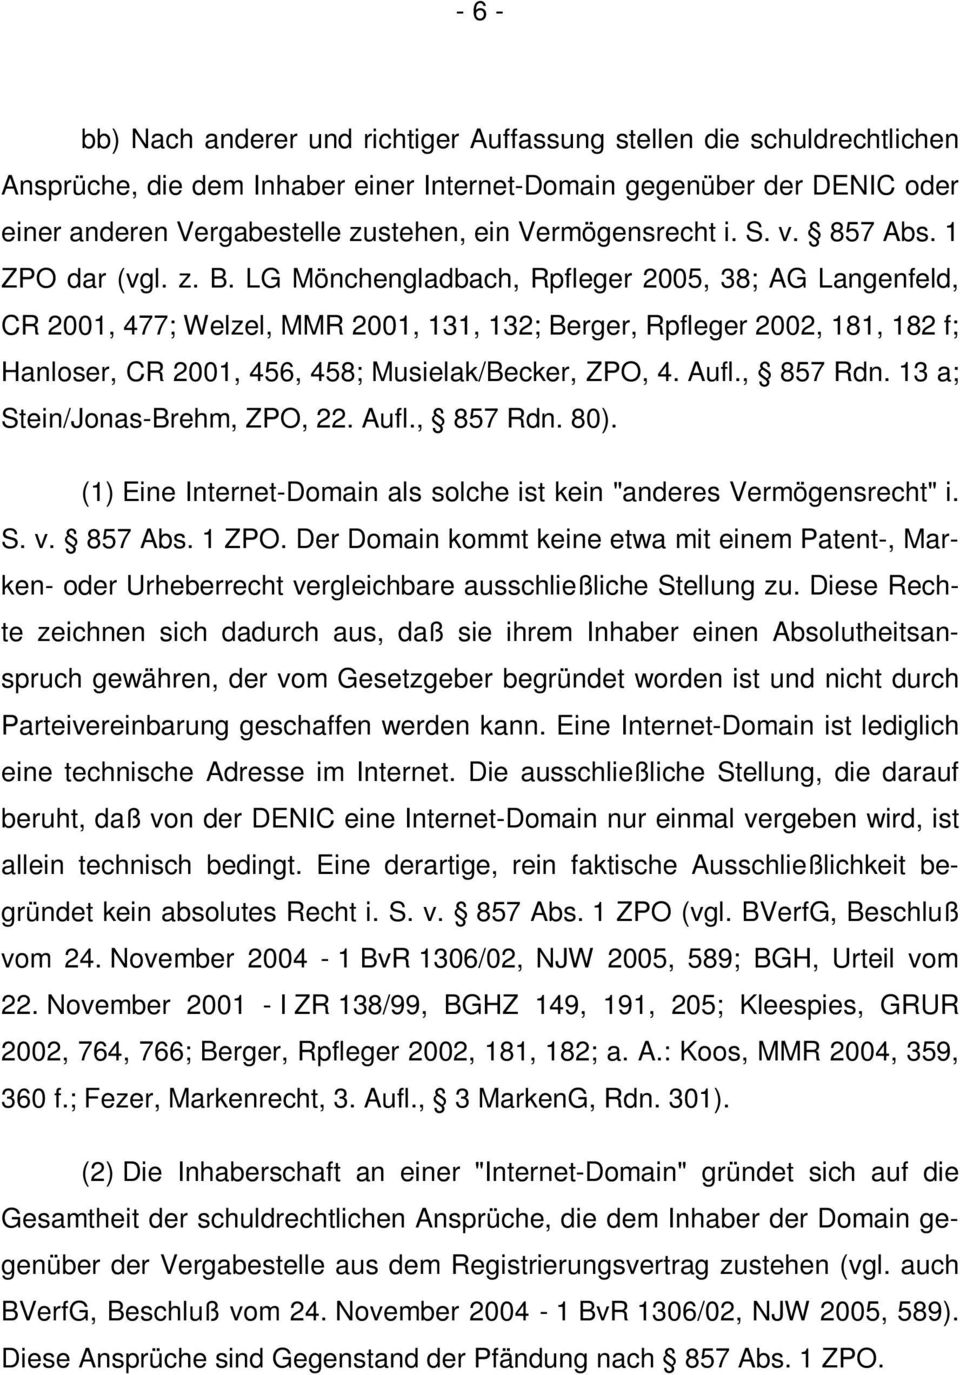 LG Mönchengladbach, Rpfleger 2005, 38; AG Langenfeld, CR 2001, 477; Welzel, MMR 2001, 131, 132; Berger, Rpfleger 2002, 181, 182 f; Hanloser, CR 2001, 456, 458; Musielak/Becker, ZPO, 4. Aufl., 857 Rdn.